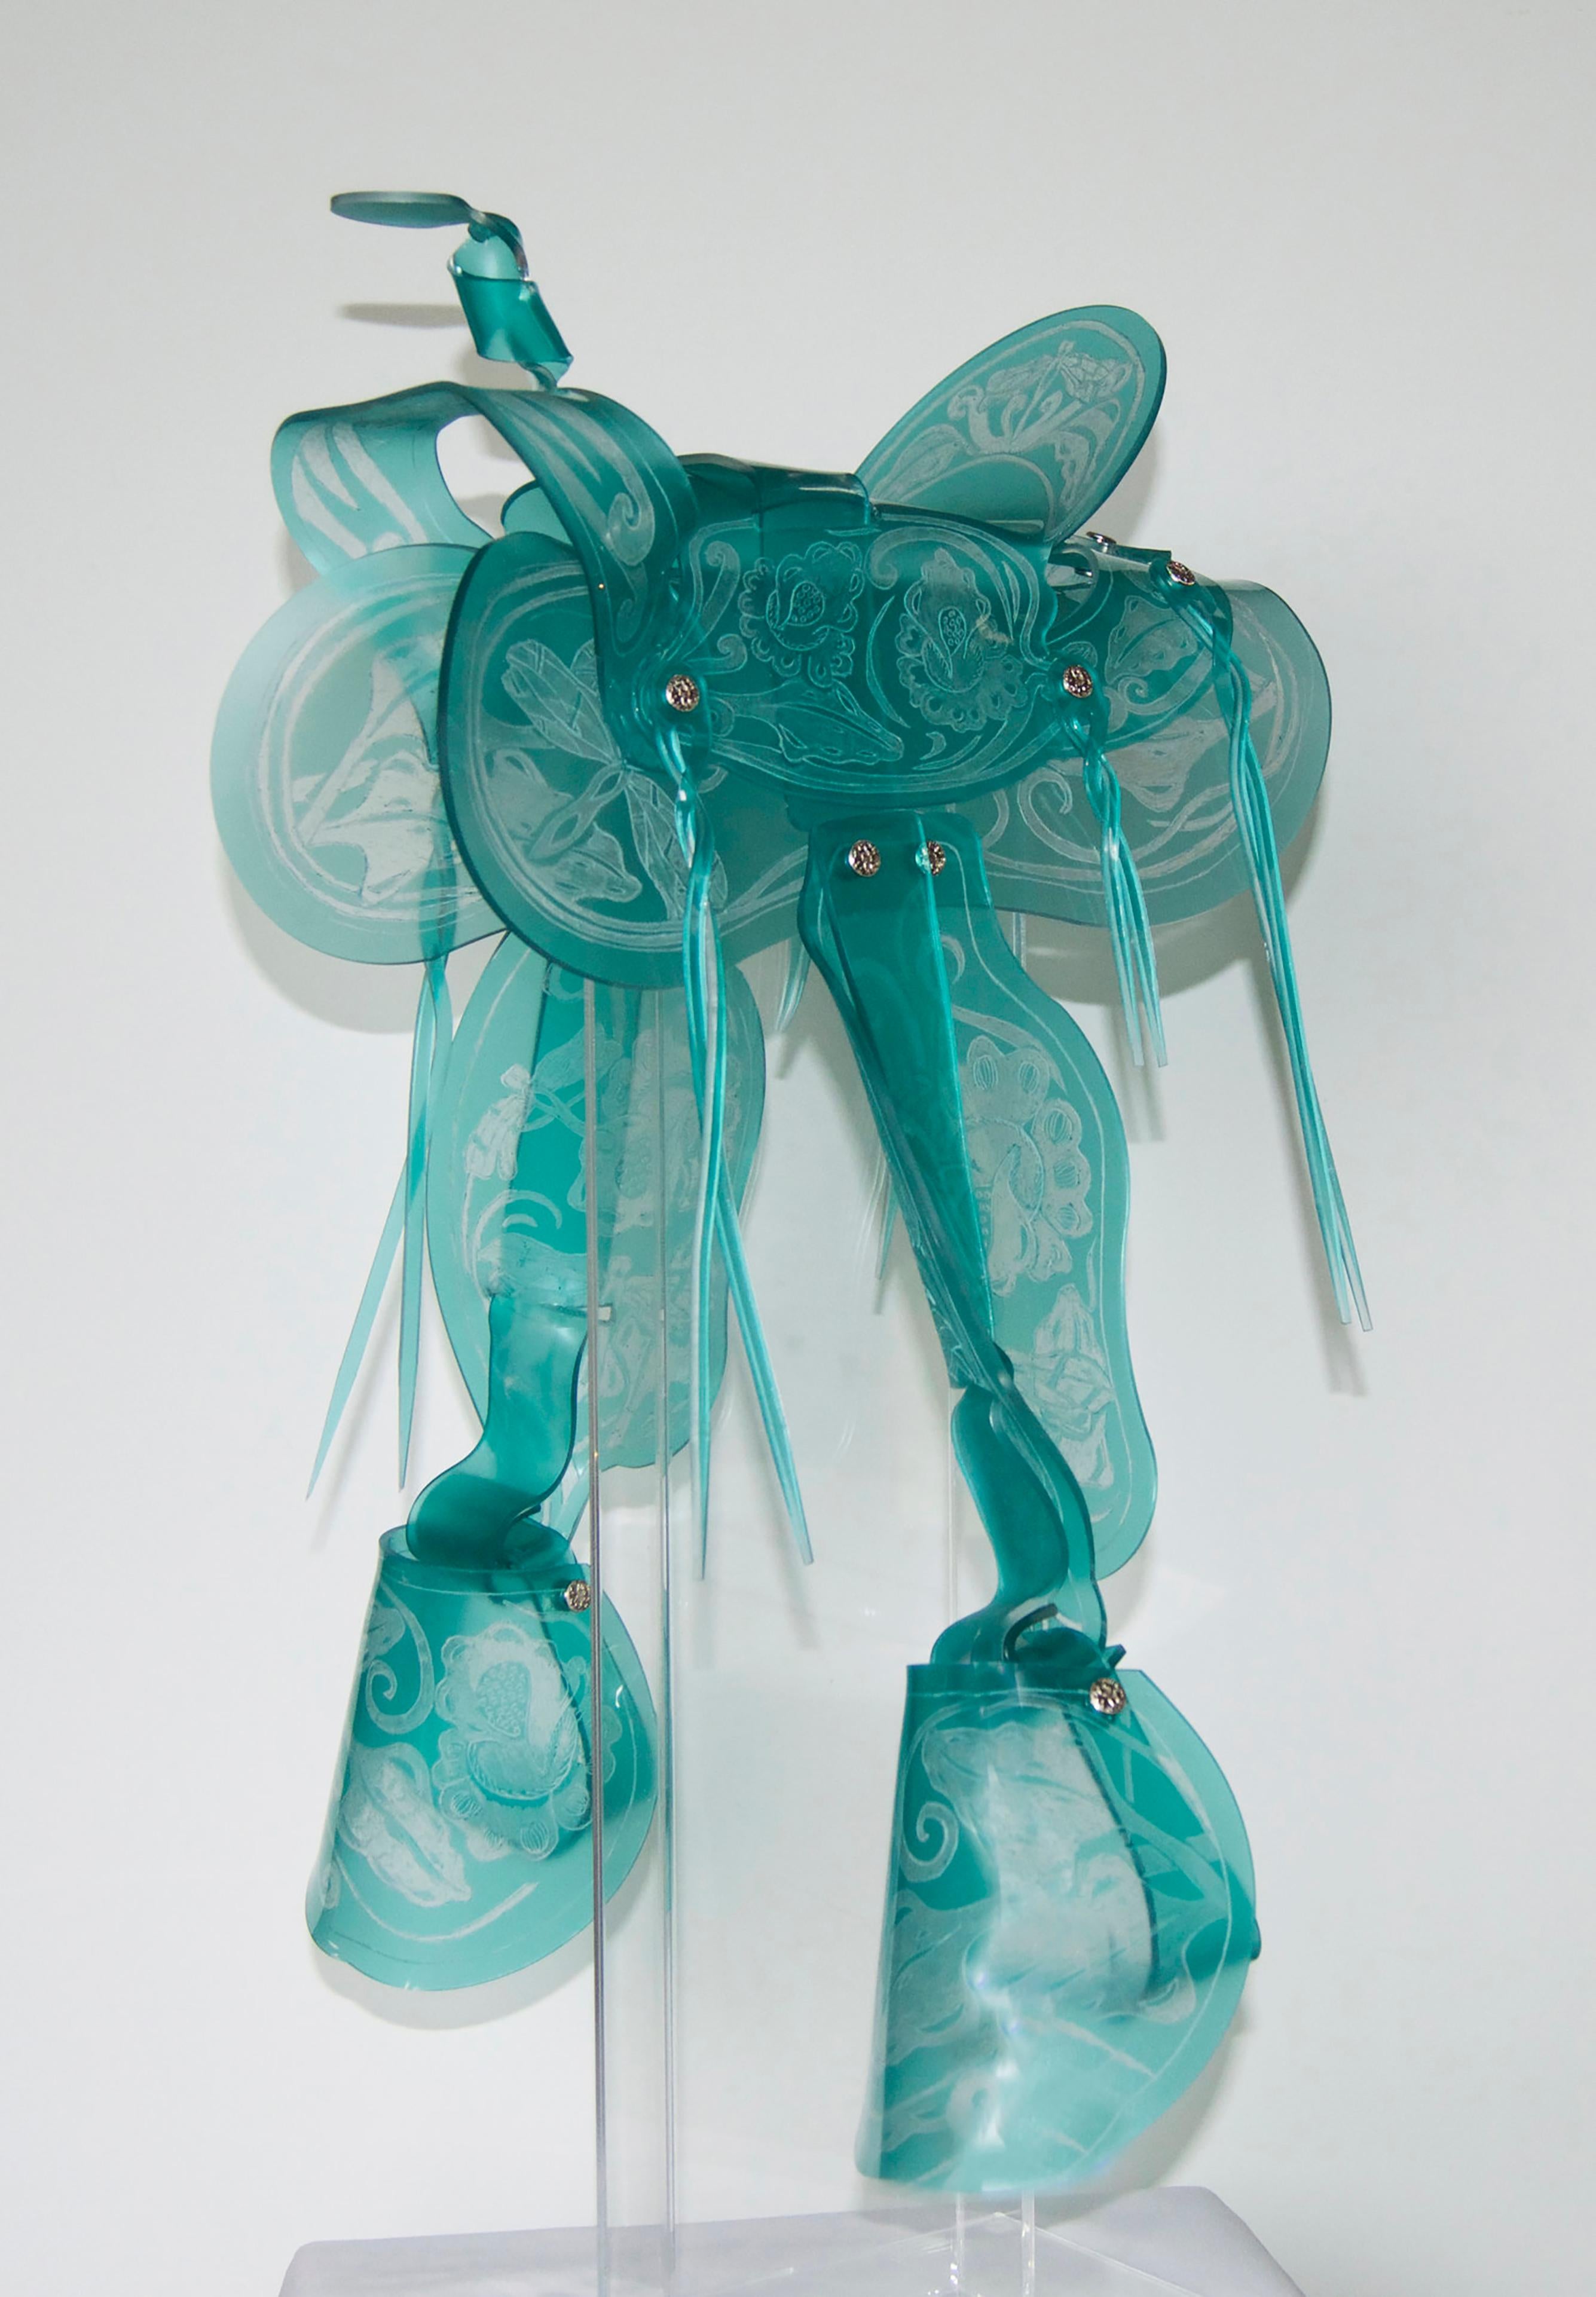 Maeve Eichelberger Figurative Sculpture – "Türkis" -  UV-Tinten gedruckt auf Acryl, handgeformt  & geätzt 